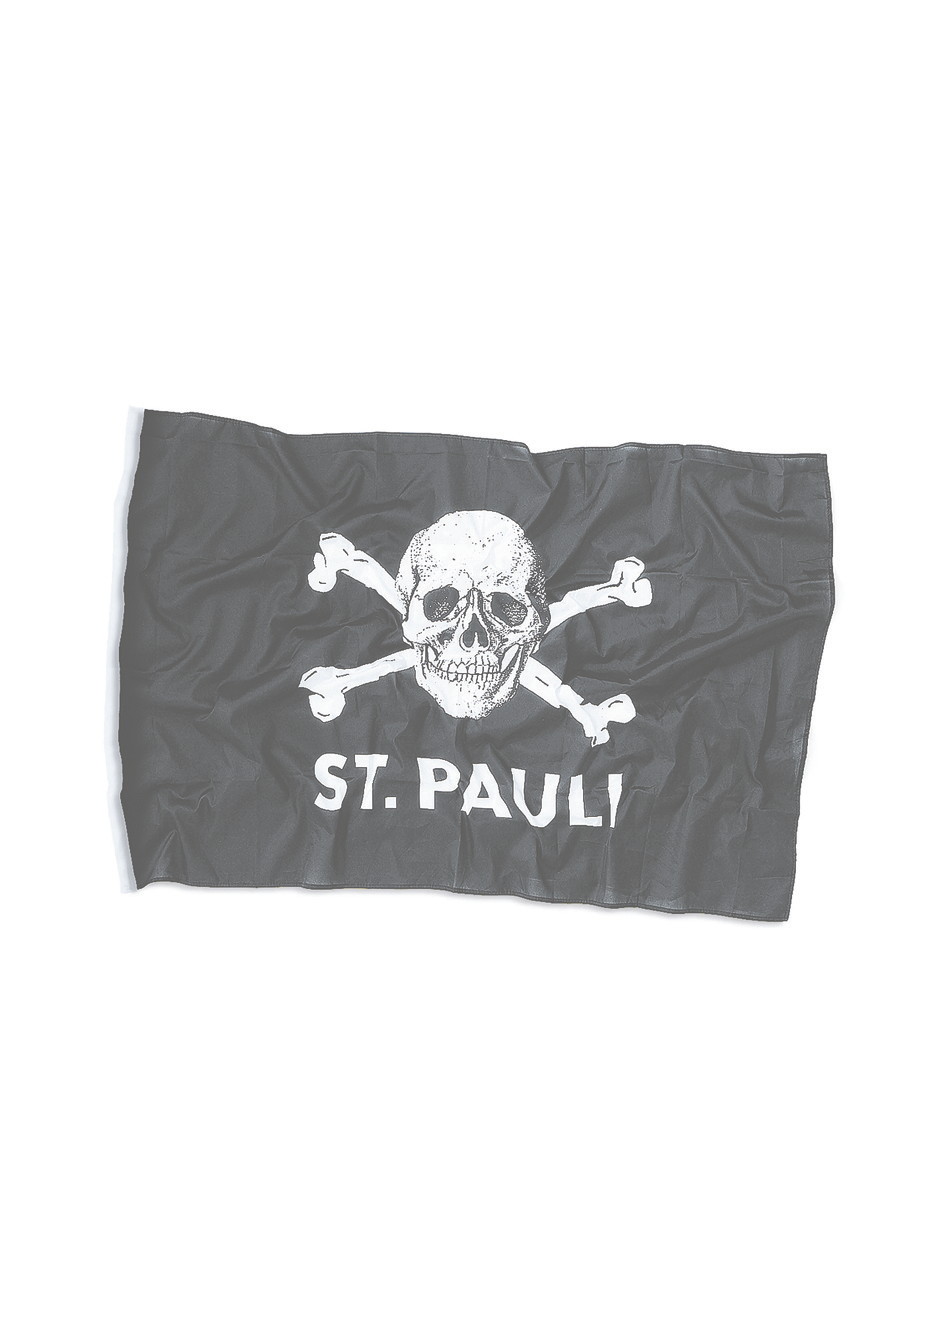 Skull and crossbones flag, small